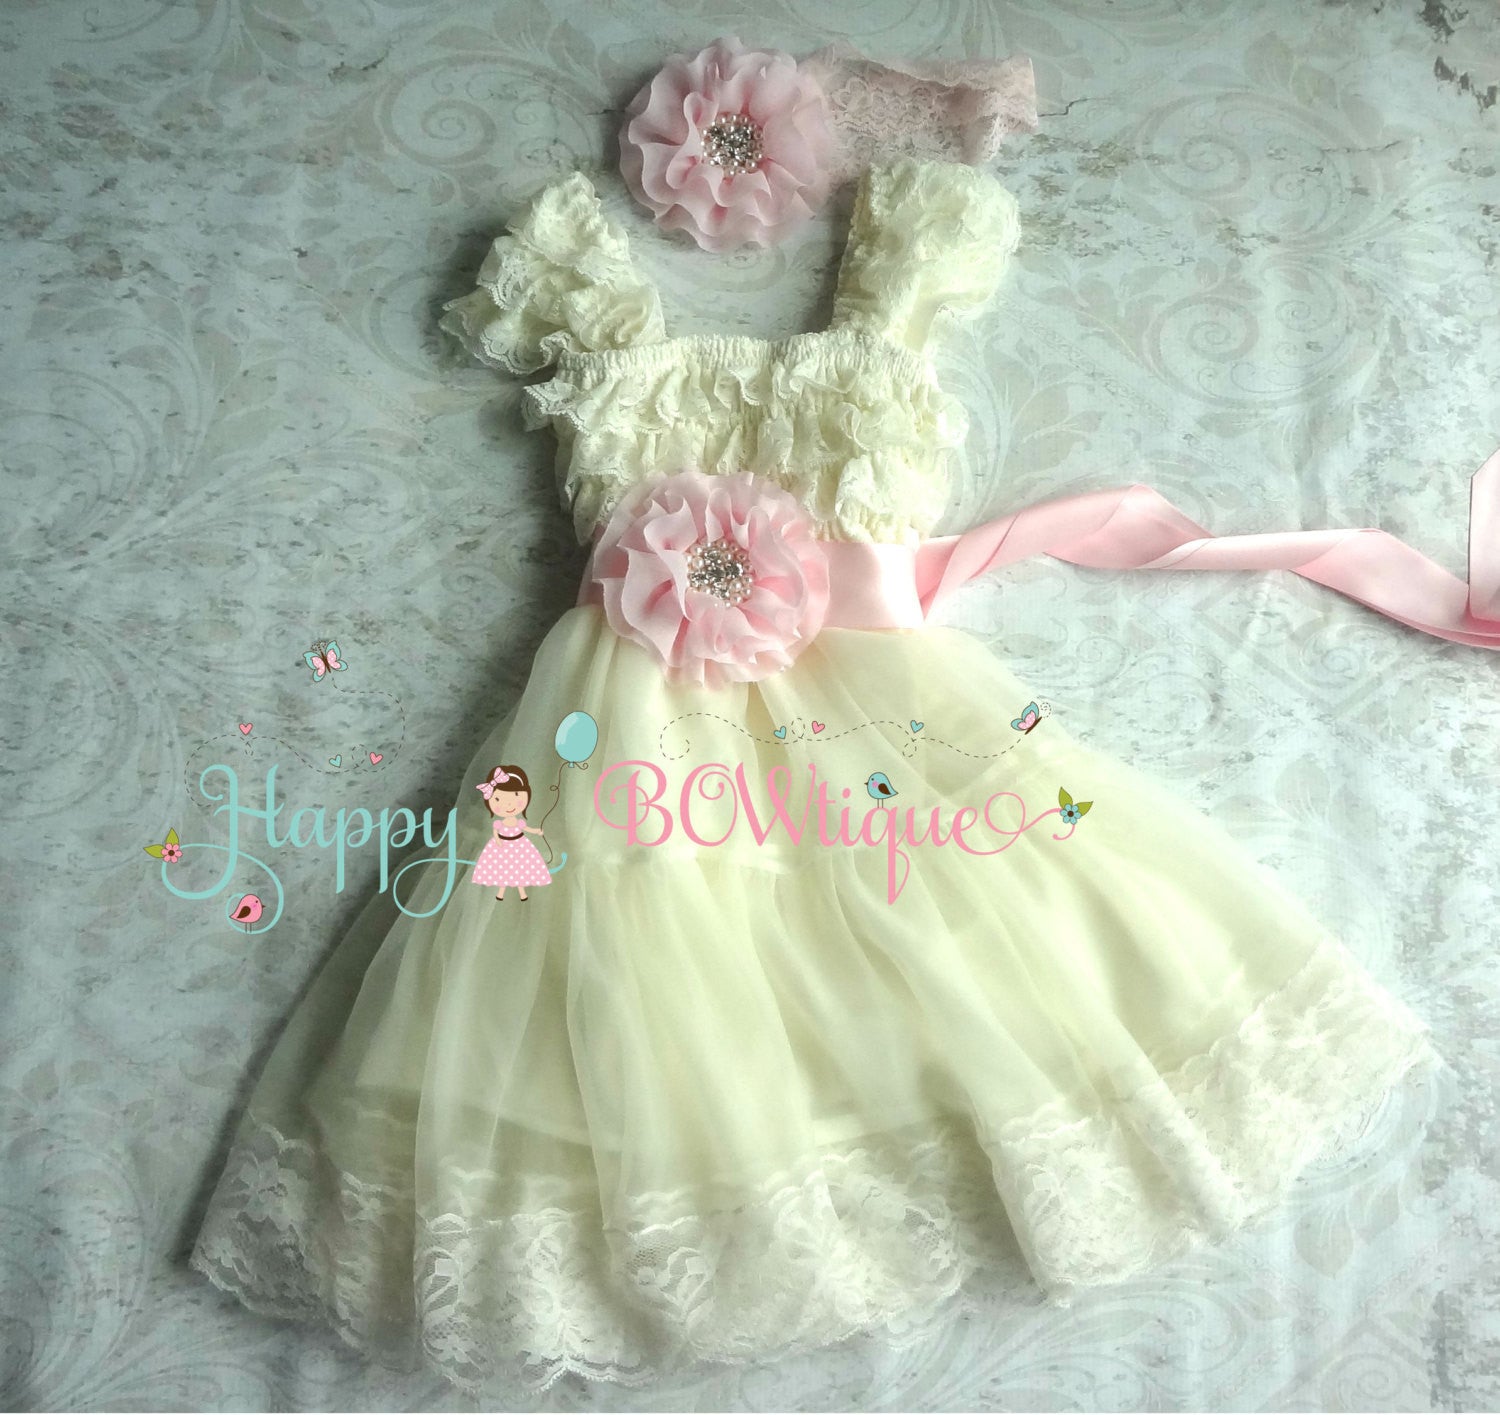 girls pink chiffon dress